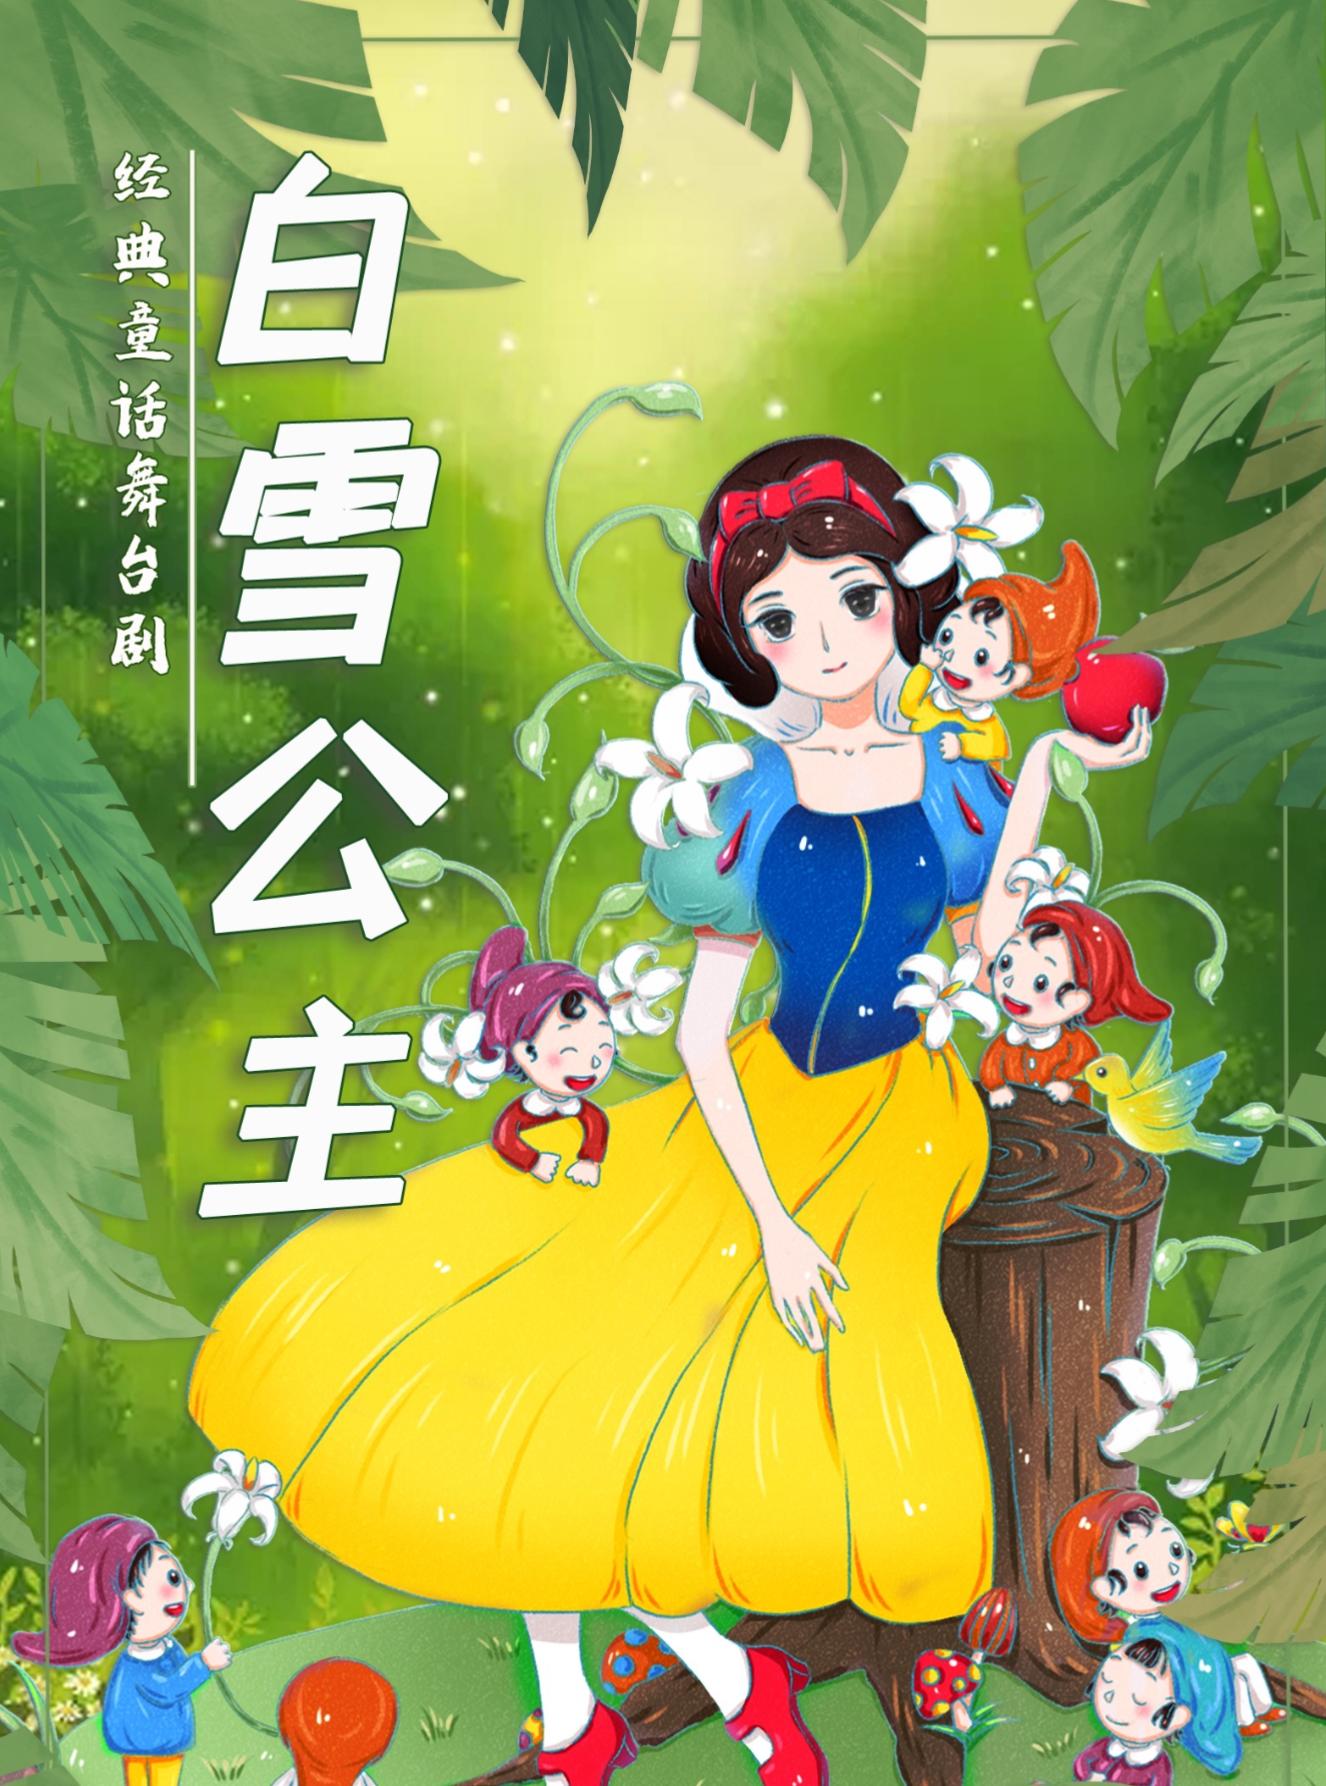 《白雪公主》经典梦幻儿童舞台剧 北京站